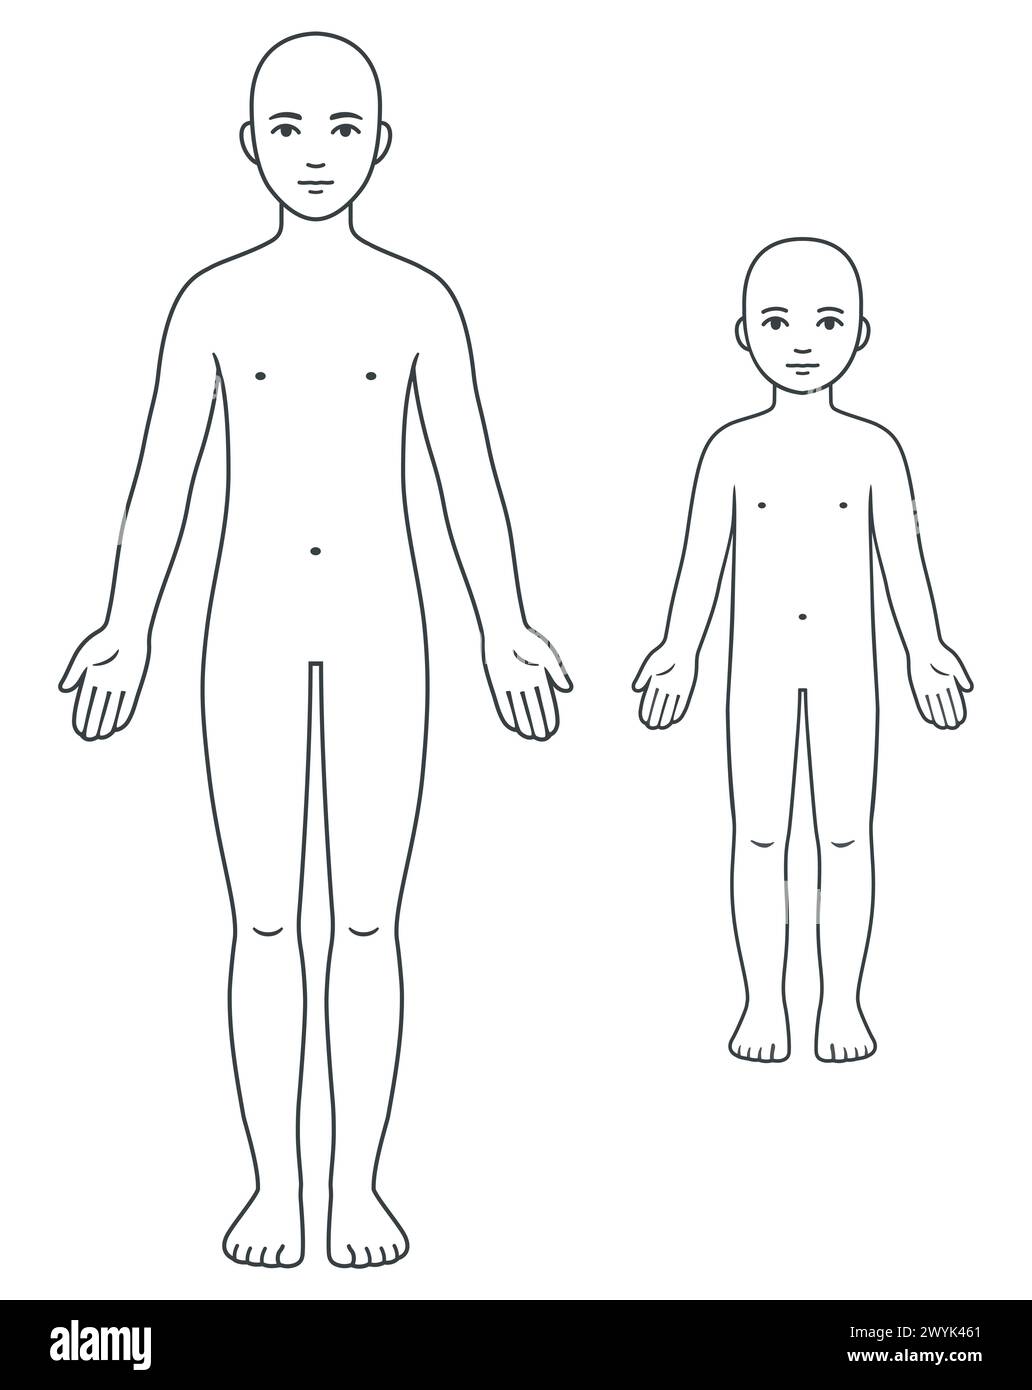 Unisex Körpervorlage für Erwachsene und Kinder. Leeres menschliches Anatomiediagramm für medizinische Infografik. Illustration isolierter Vektorgrafik. Stock Vektor